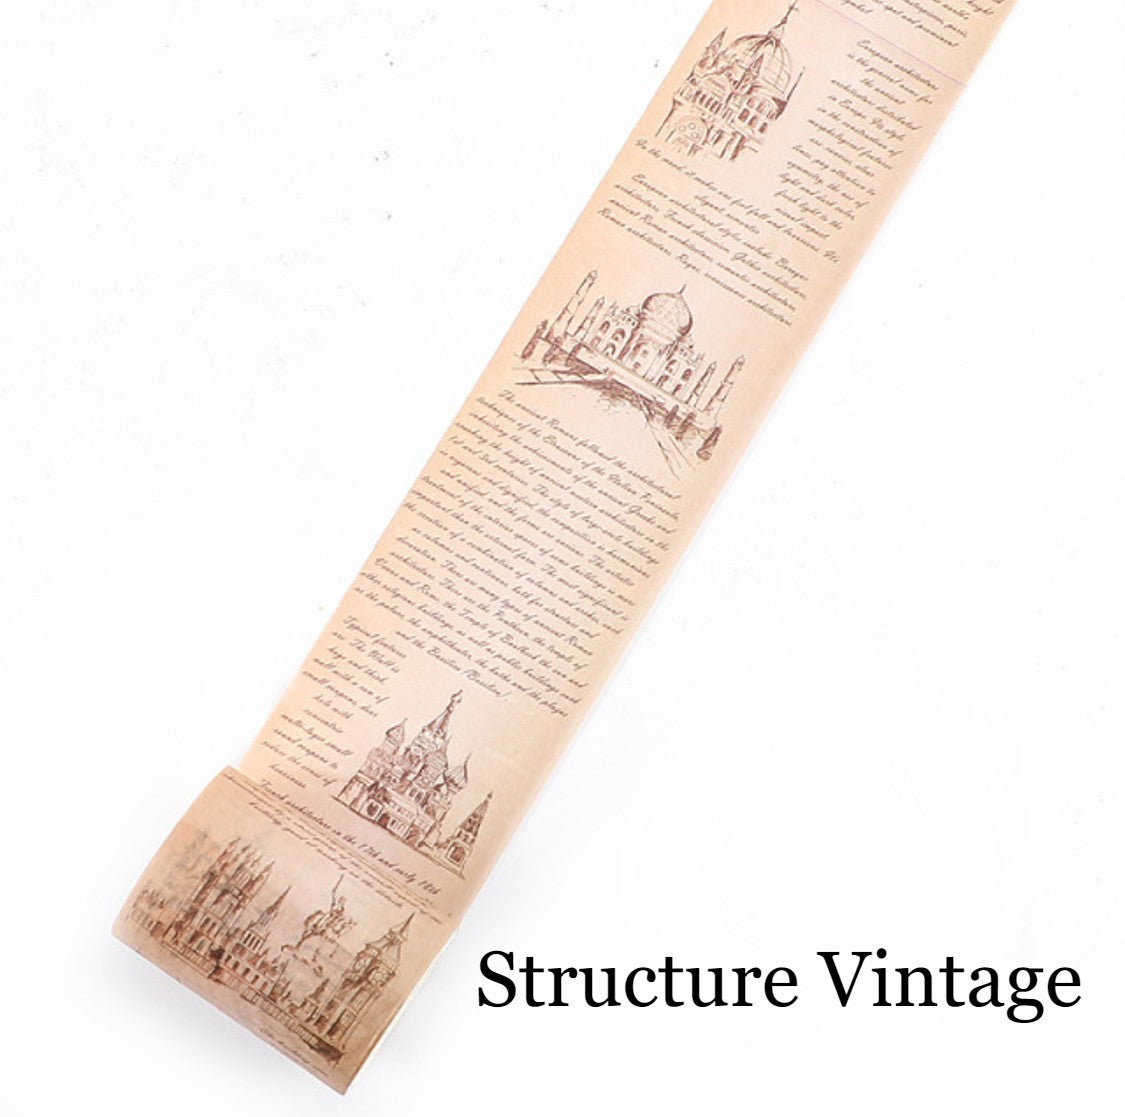 Cinta Washitape 50mmx3m “Vintage Structures”